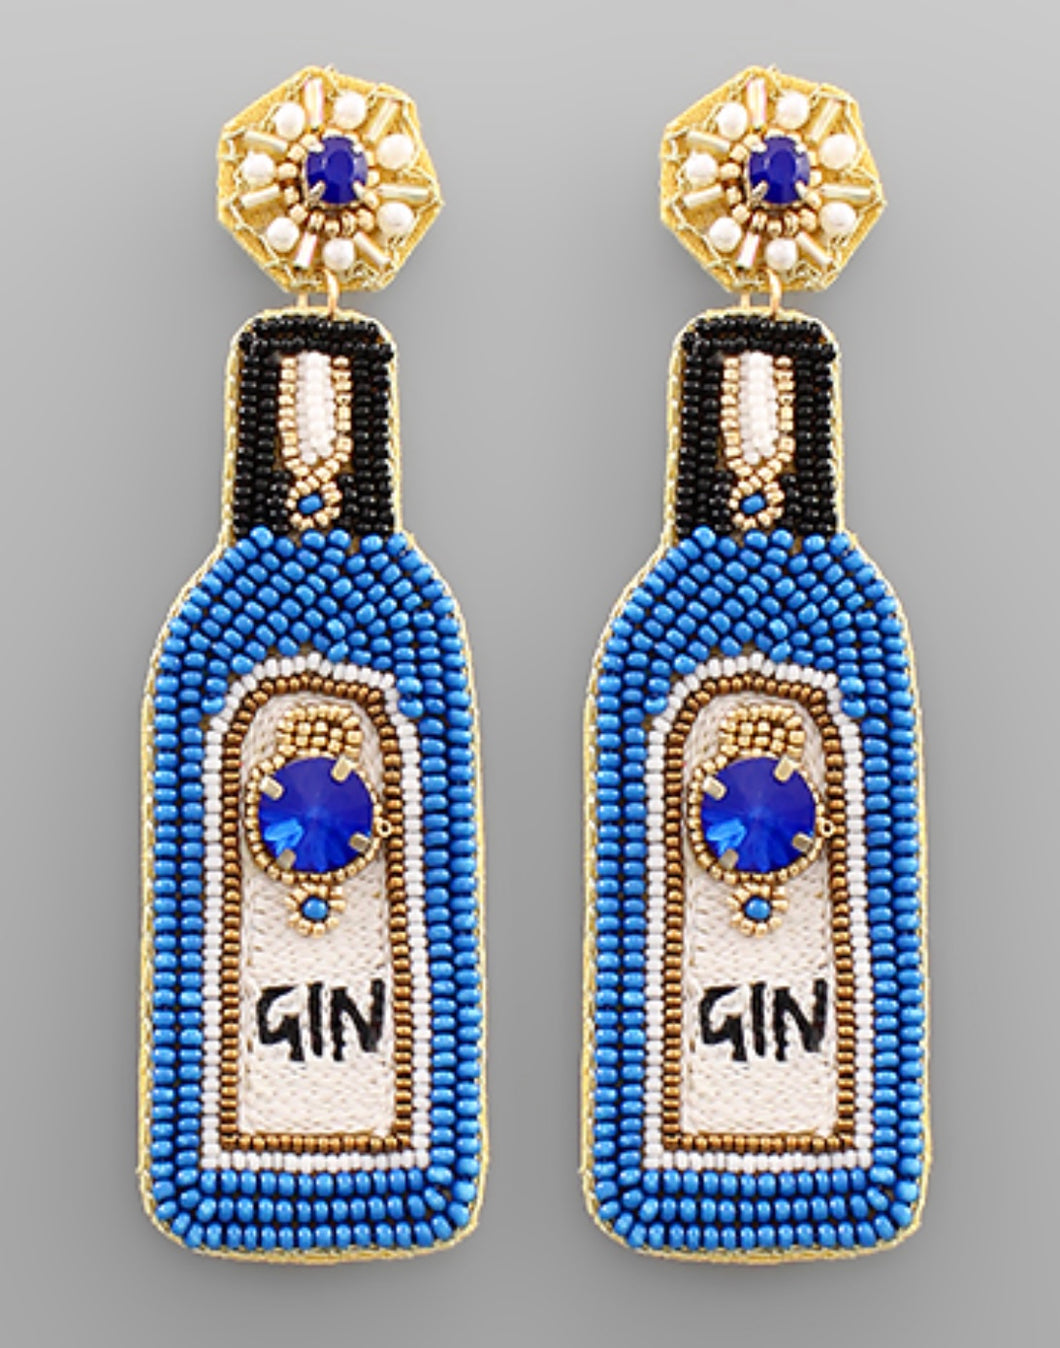 Gin Earrings